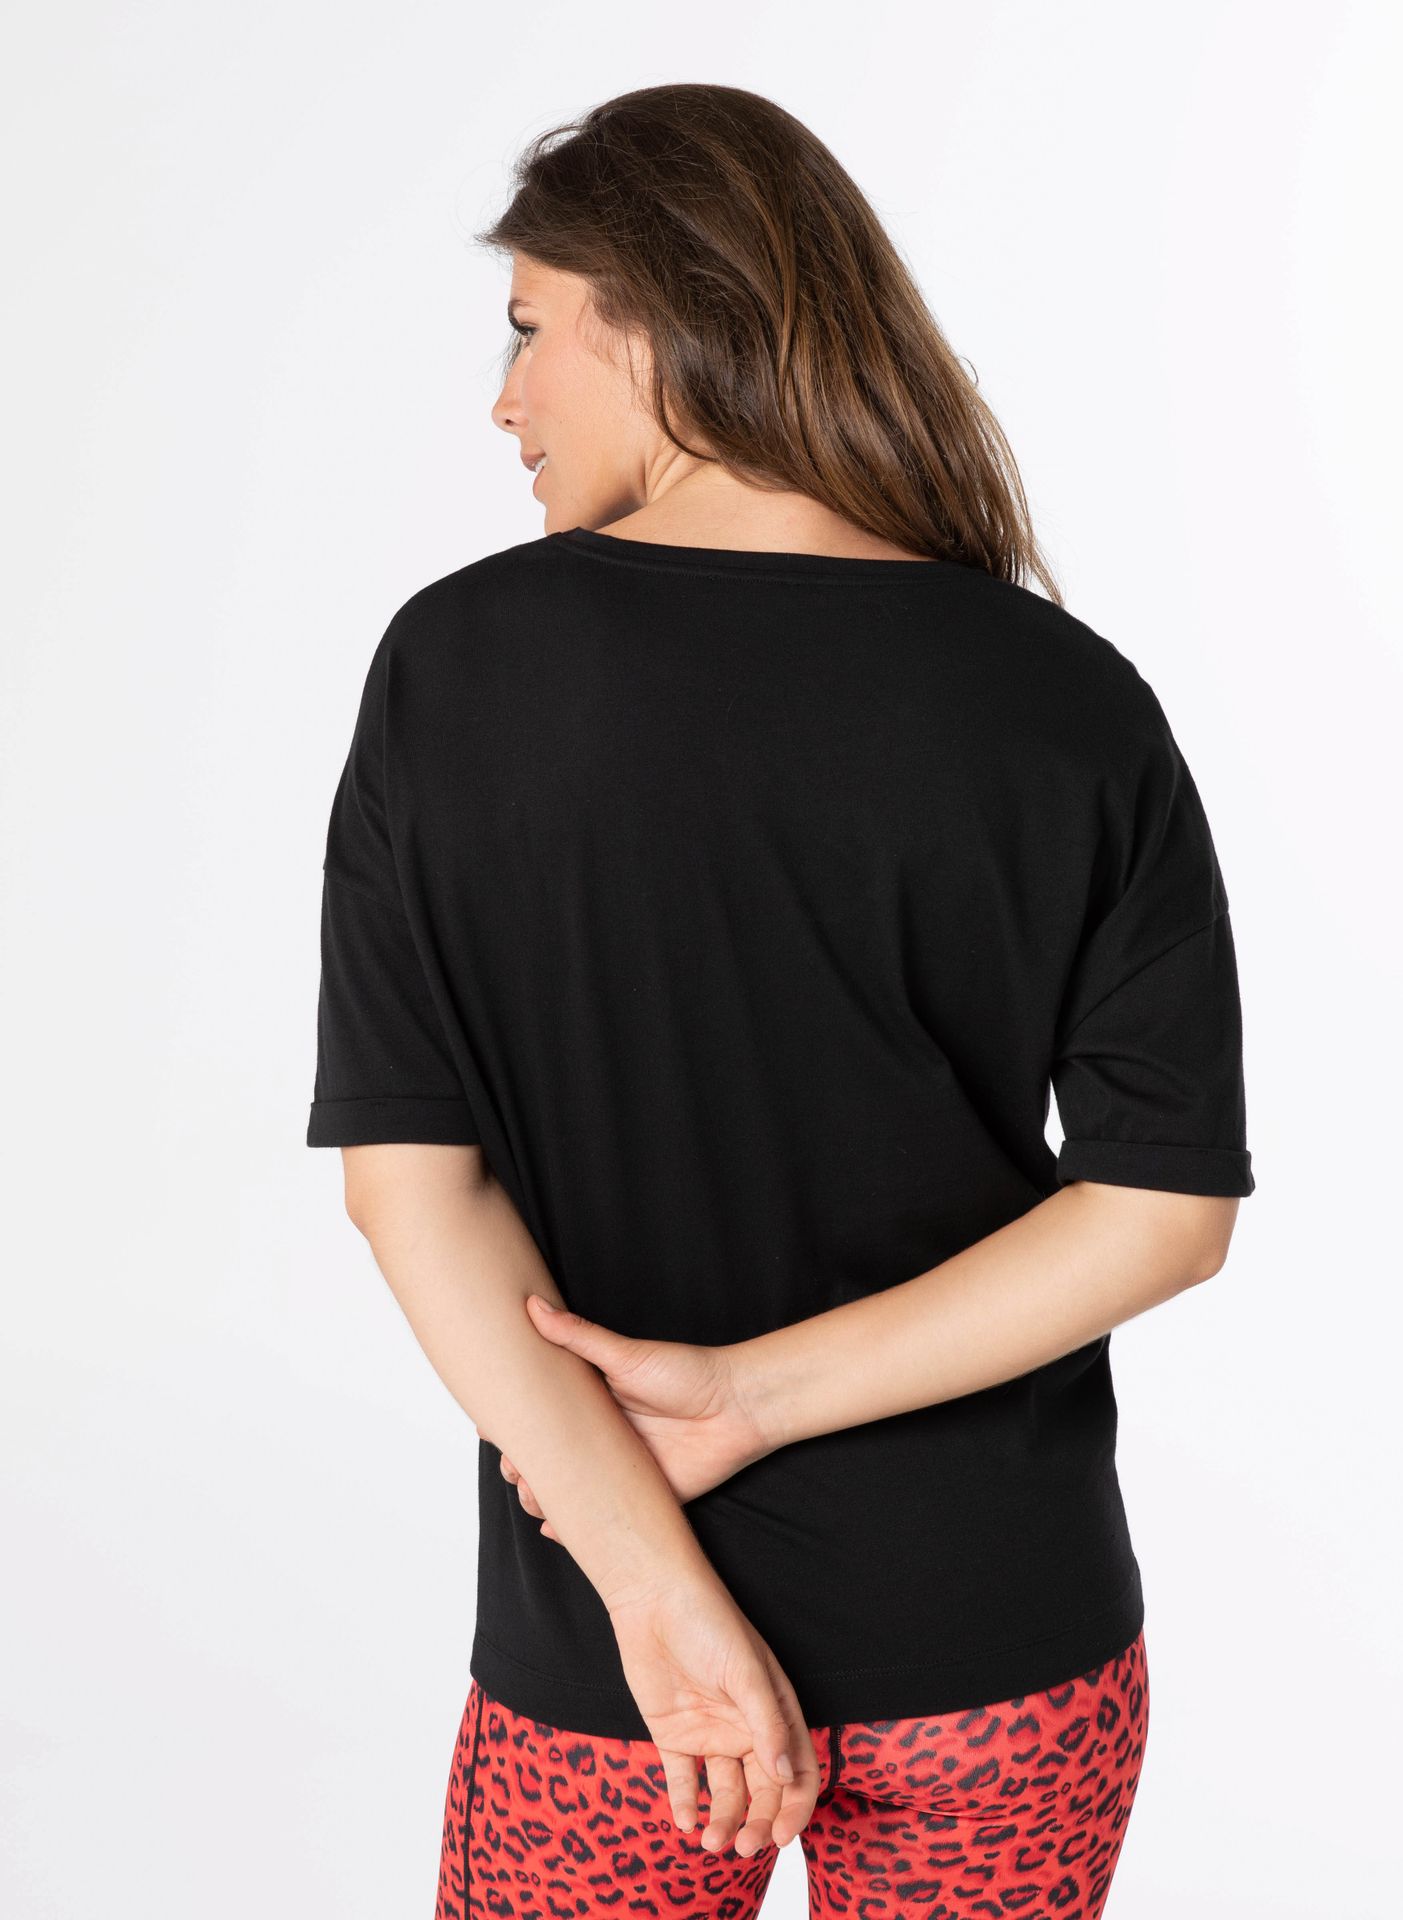 Norah Shirt - Activewear black 211917-001